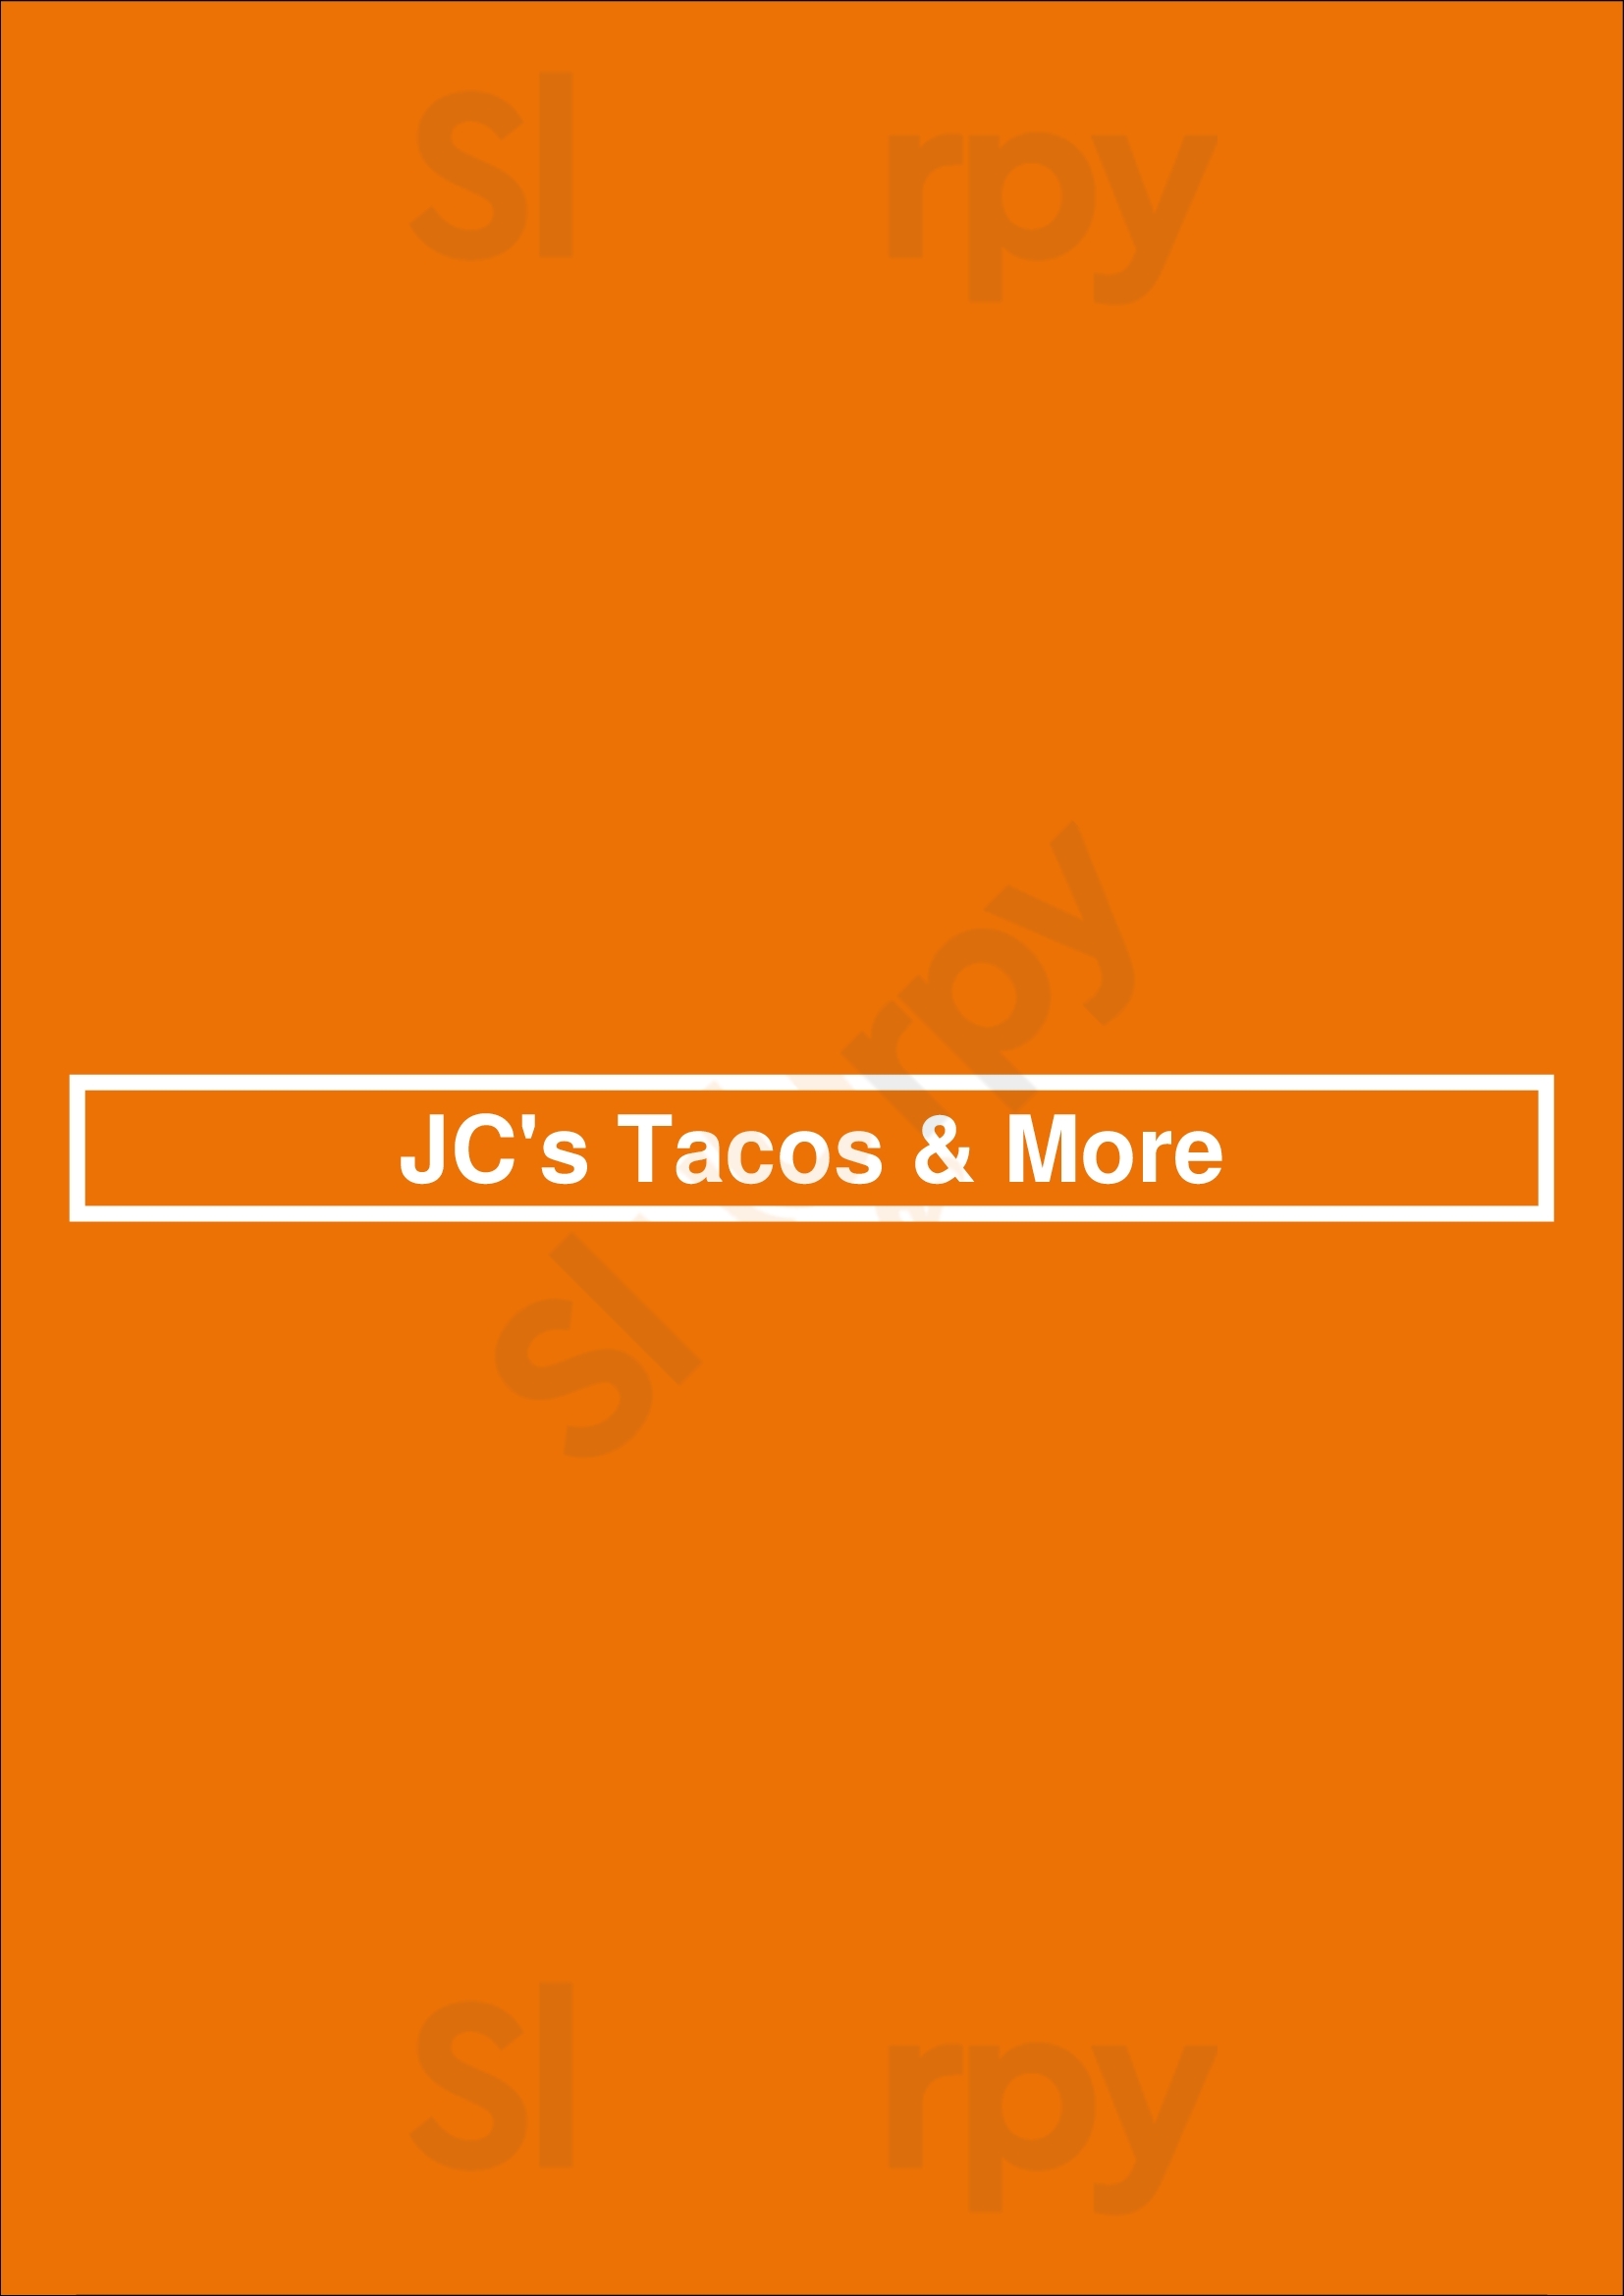 Jc's Tacos & More Winnipeg Menu - 1